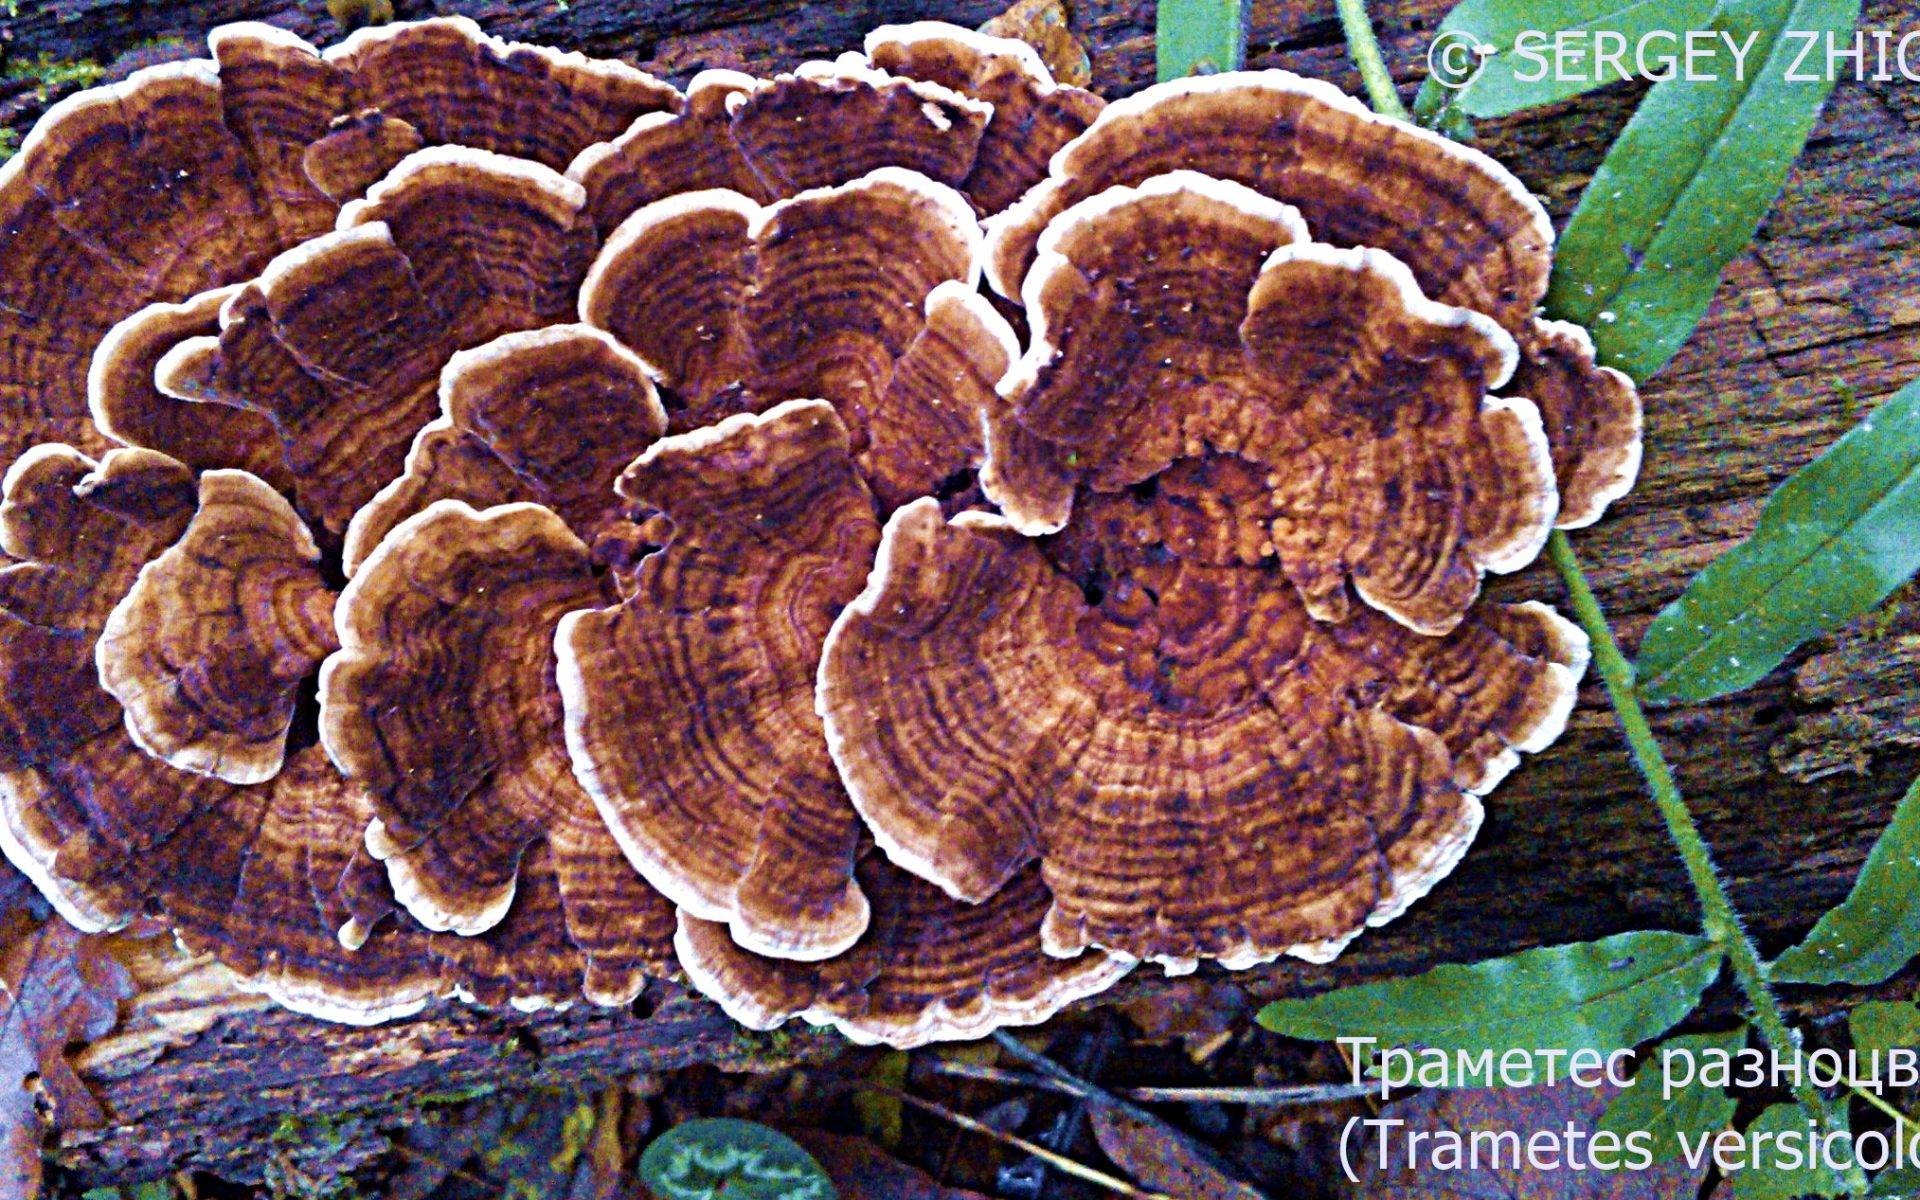 Траметес охряный — описание гриба, где растет, похожие виды, фото